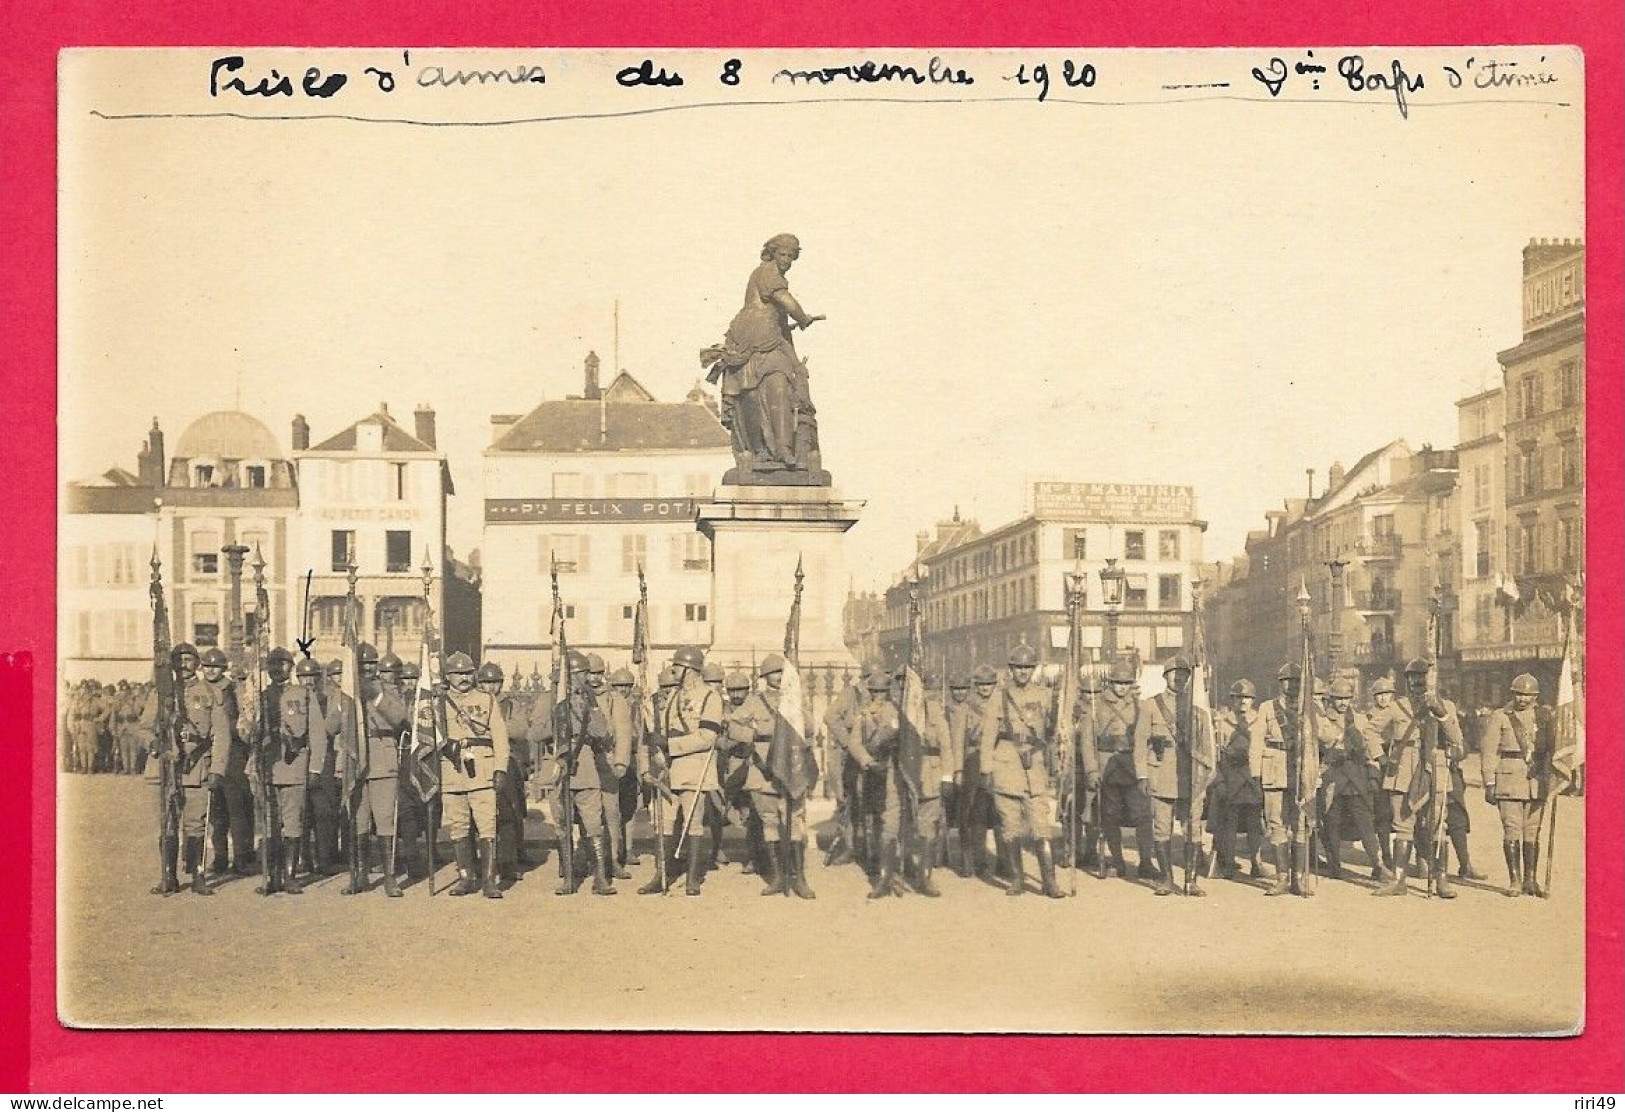 Cpa Beauvais, Prise D'armes 8 Novembre 1920 2 Corps D'Armée, Voir Scannes, 51 RI 2me Compagnie - Régiments